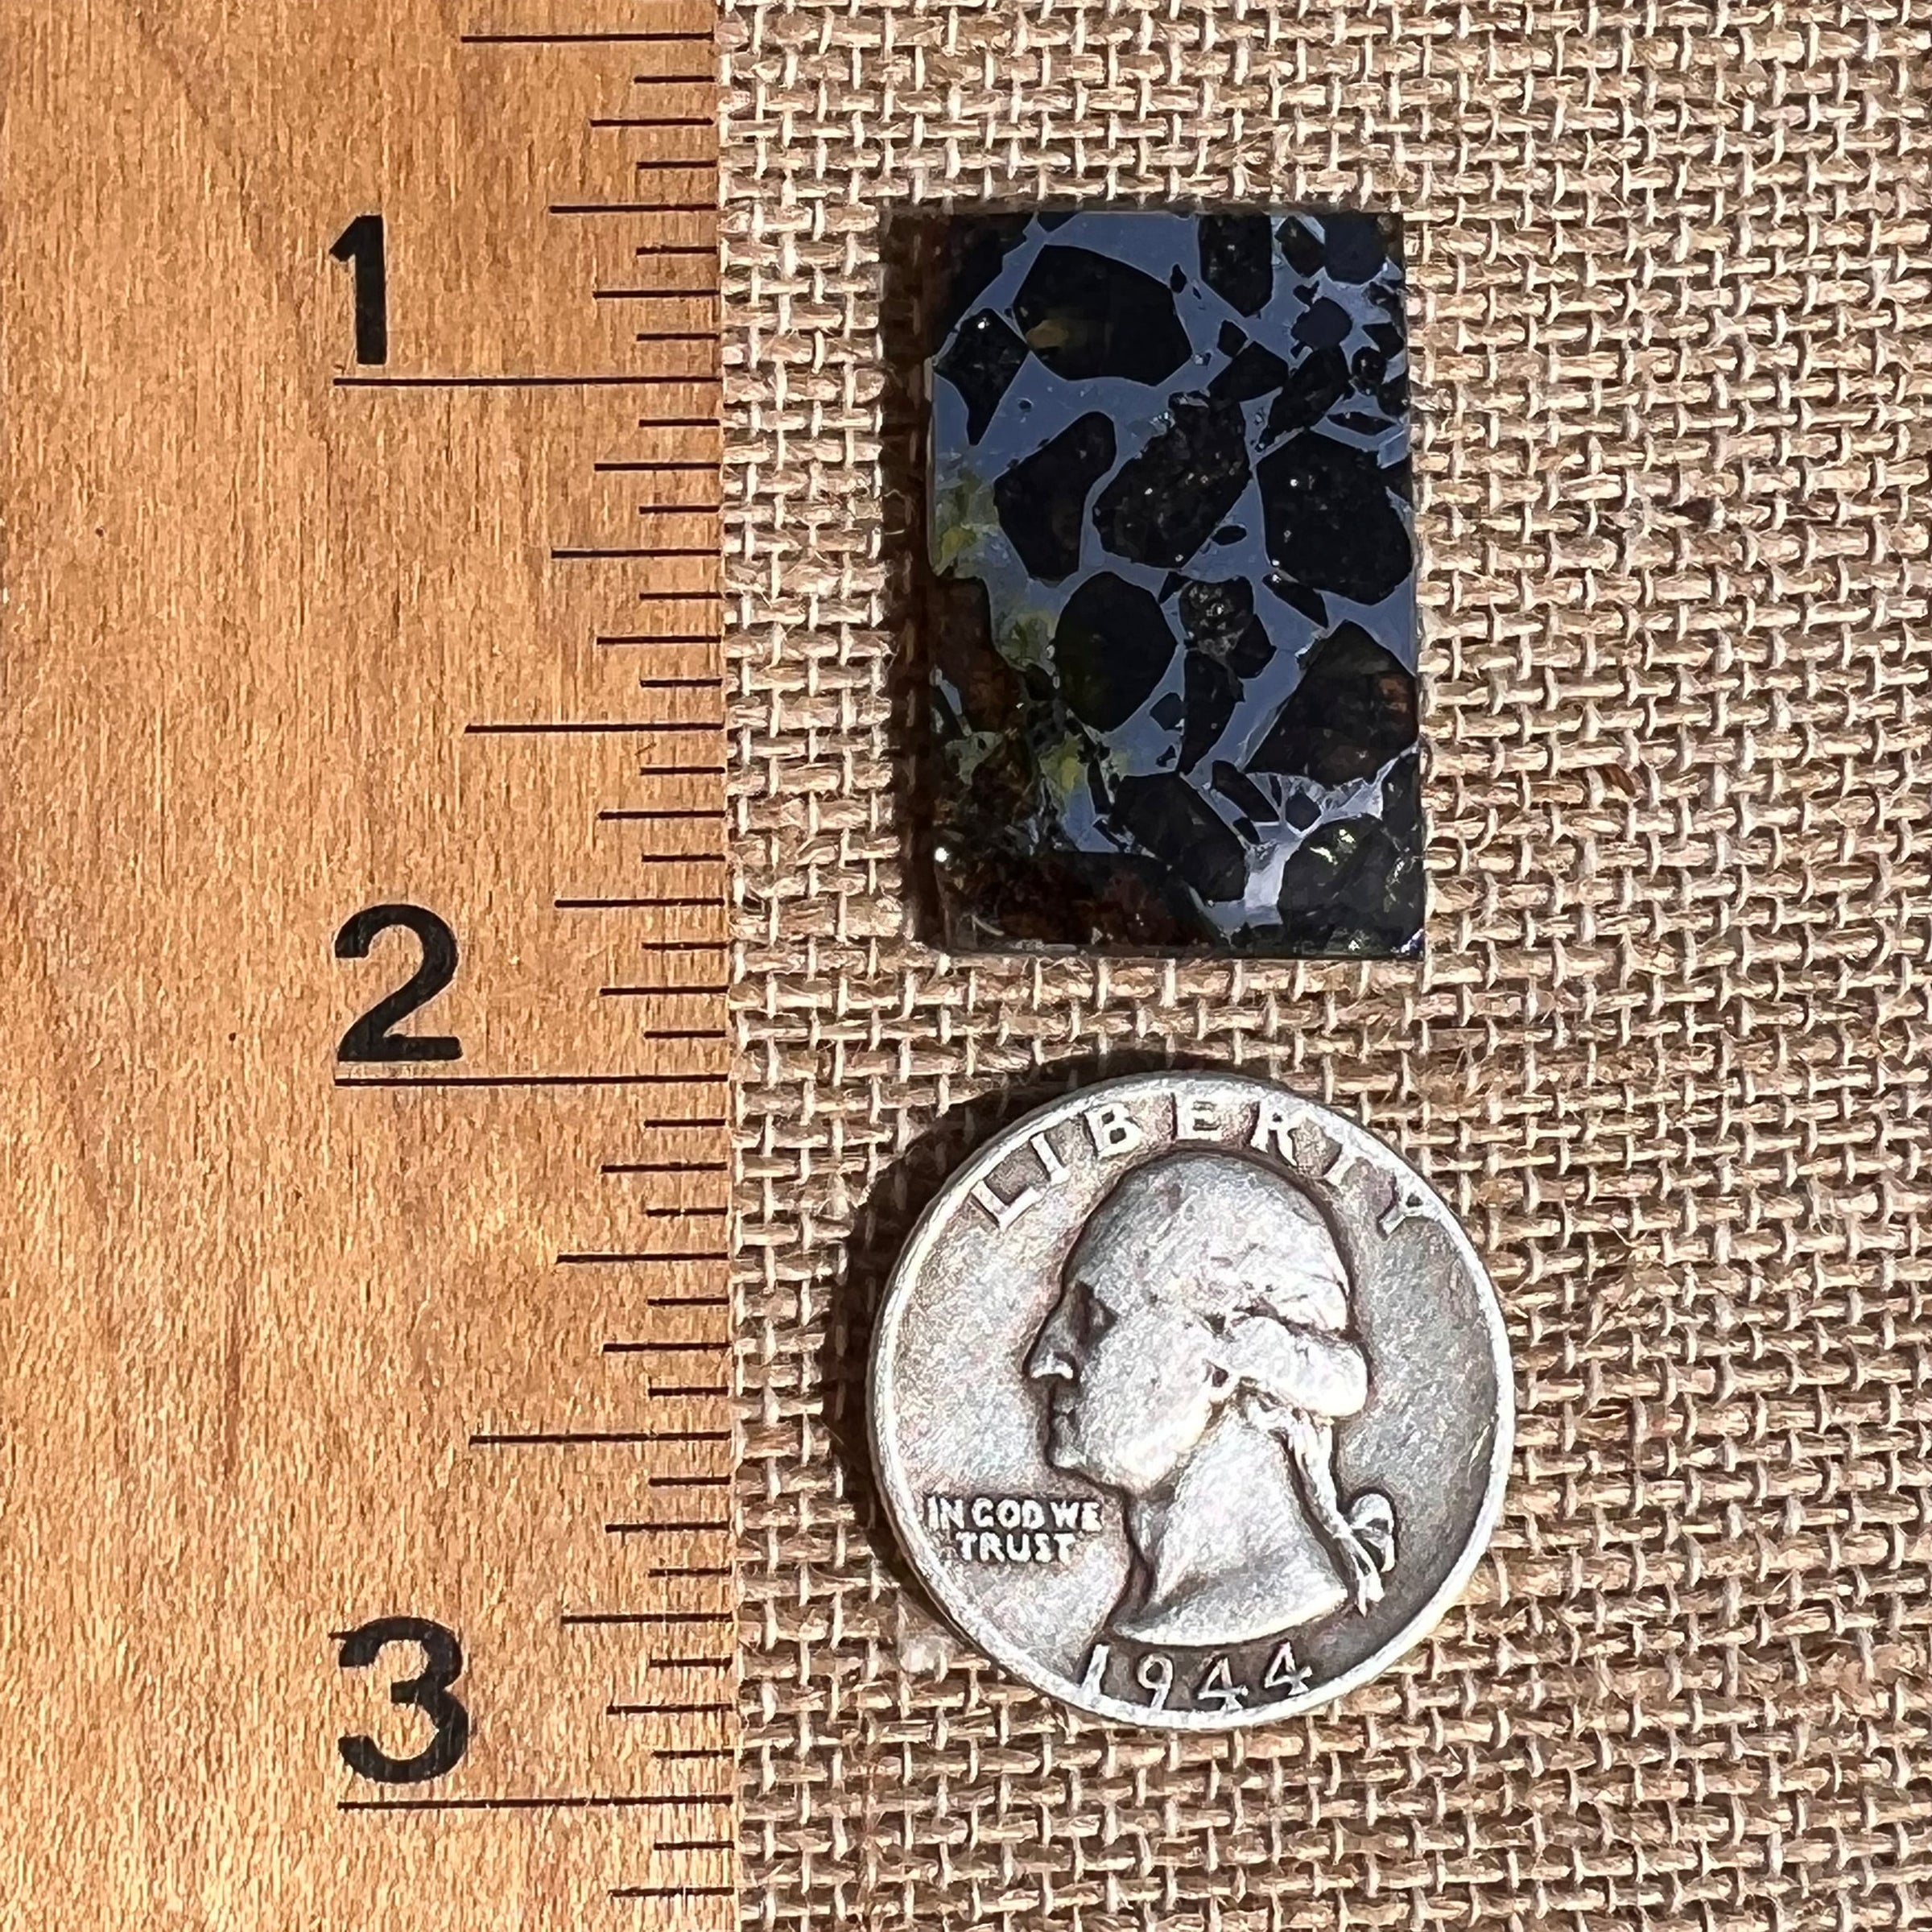 Sericho Pallasite Meteorite #4